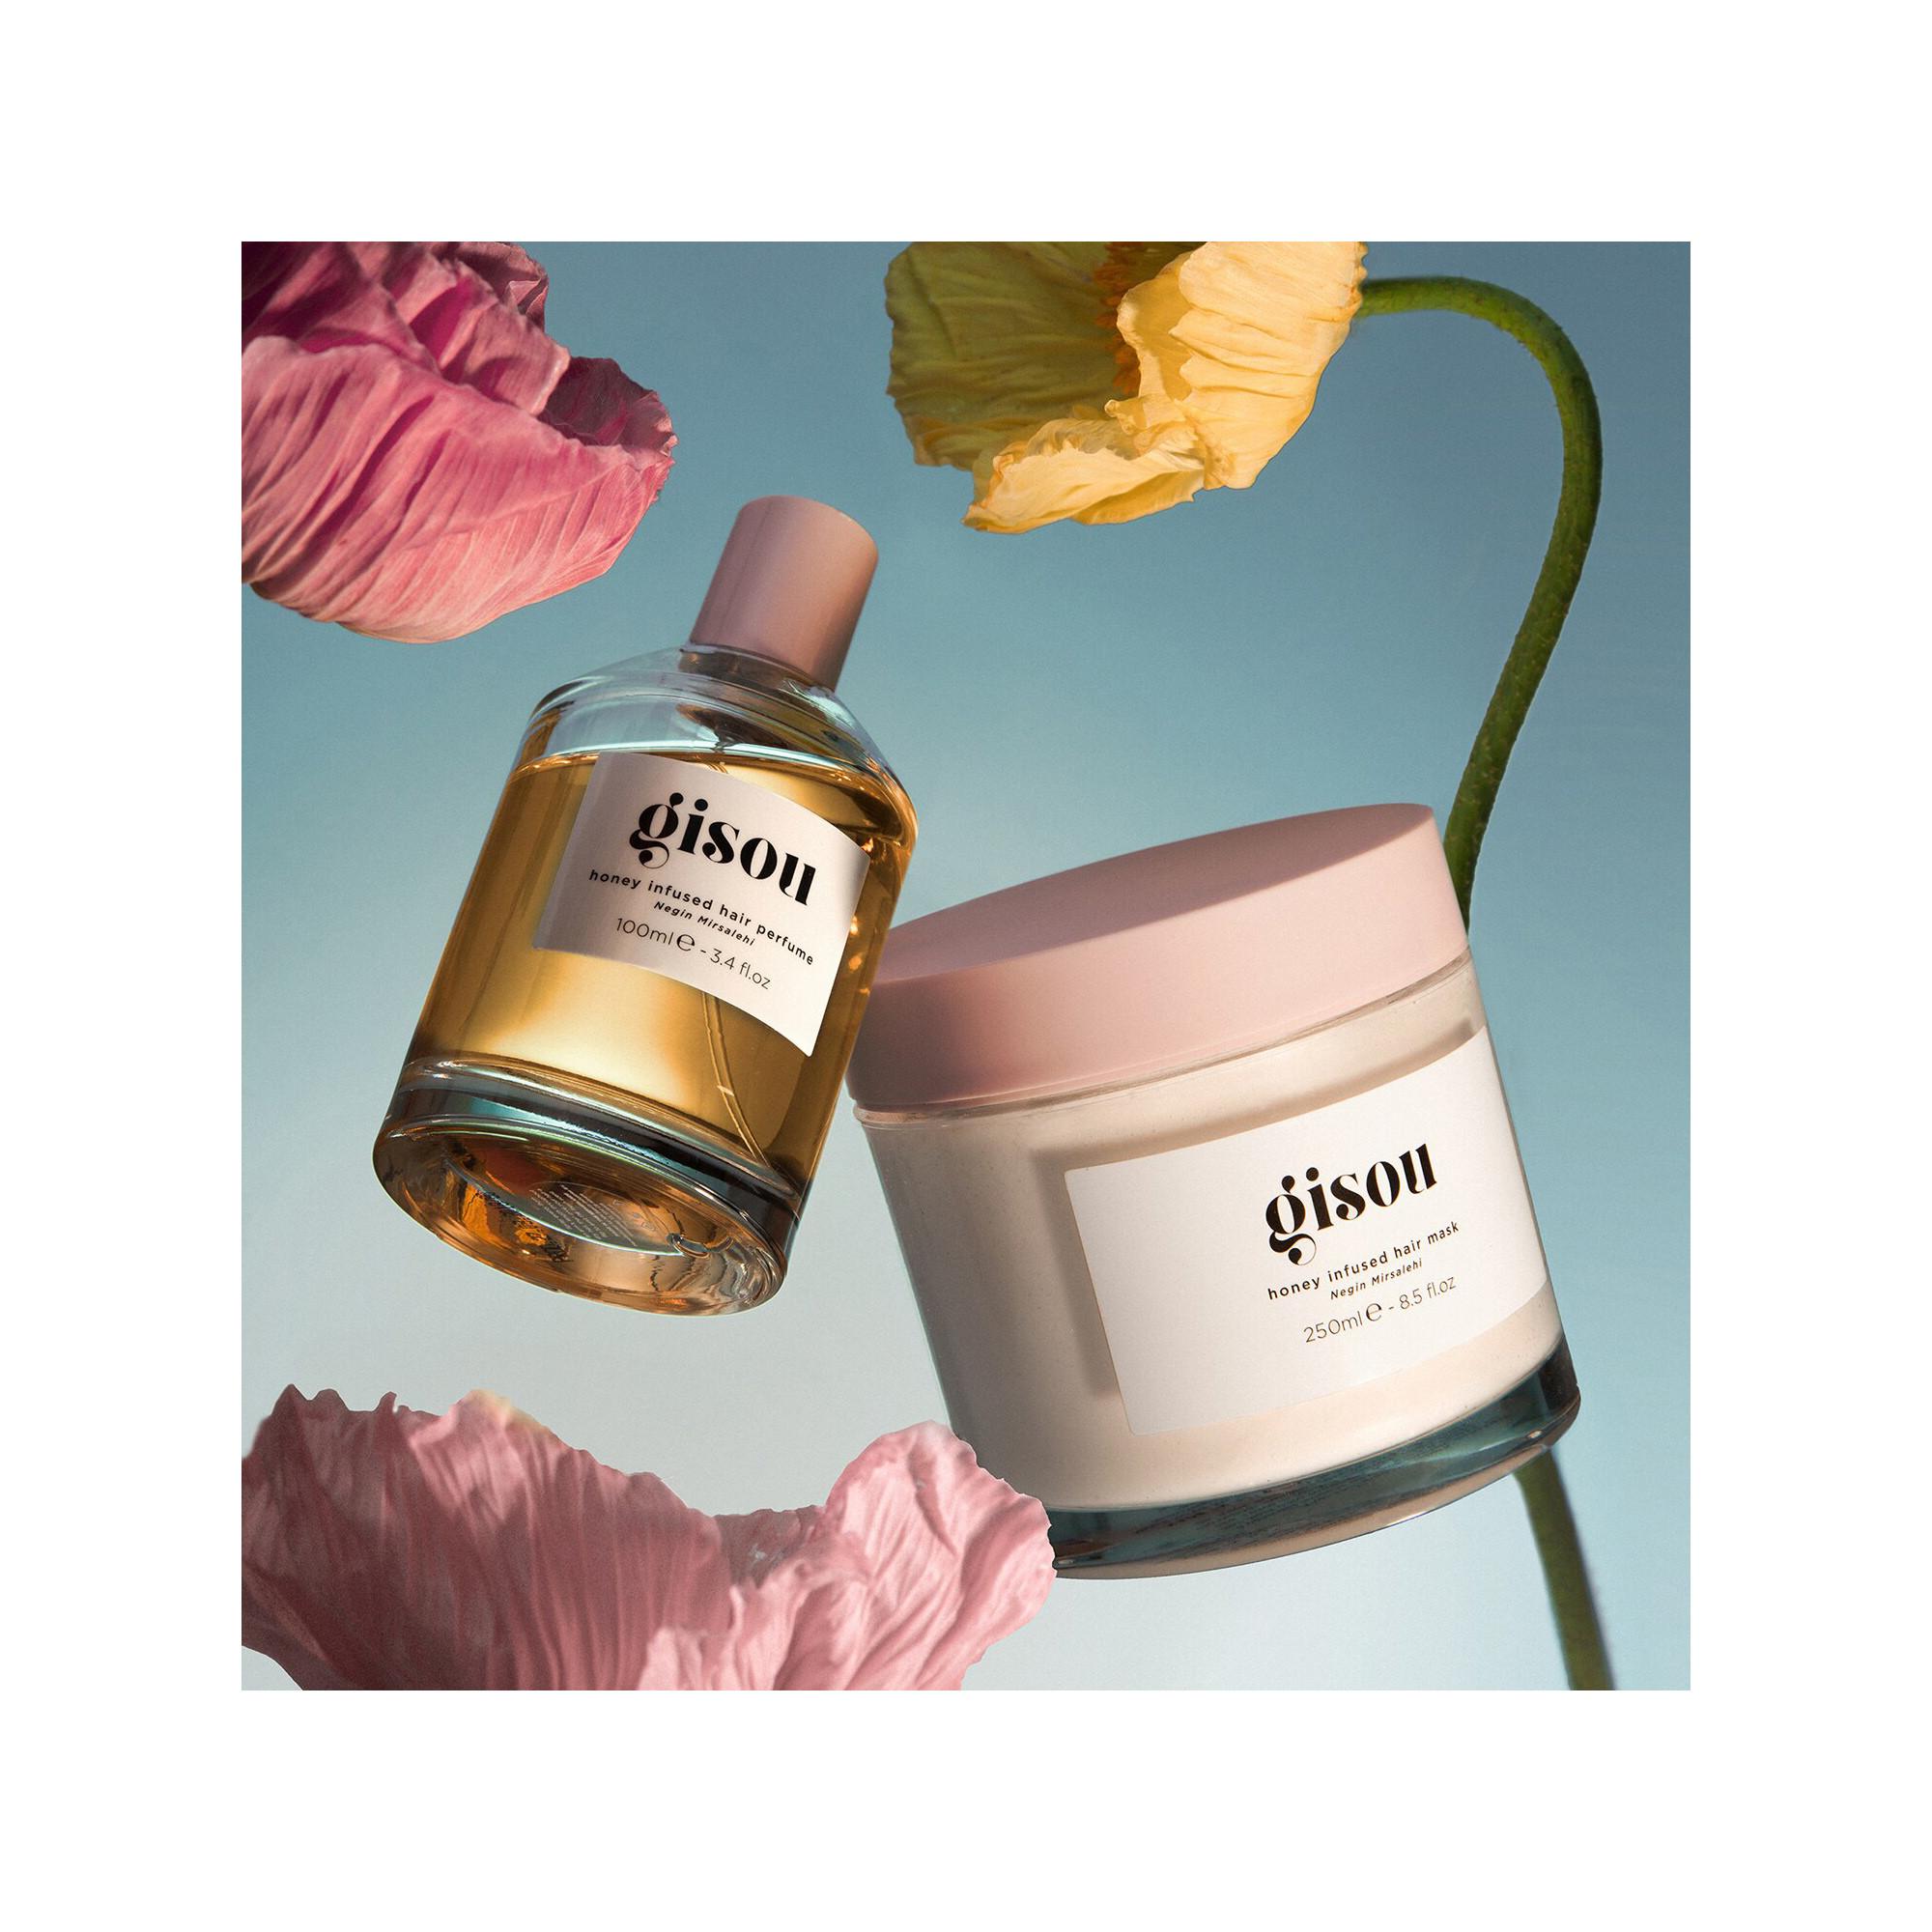 GISOU  Honey Infused Perfume - Haarduft 